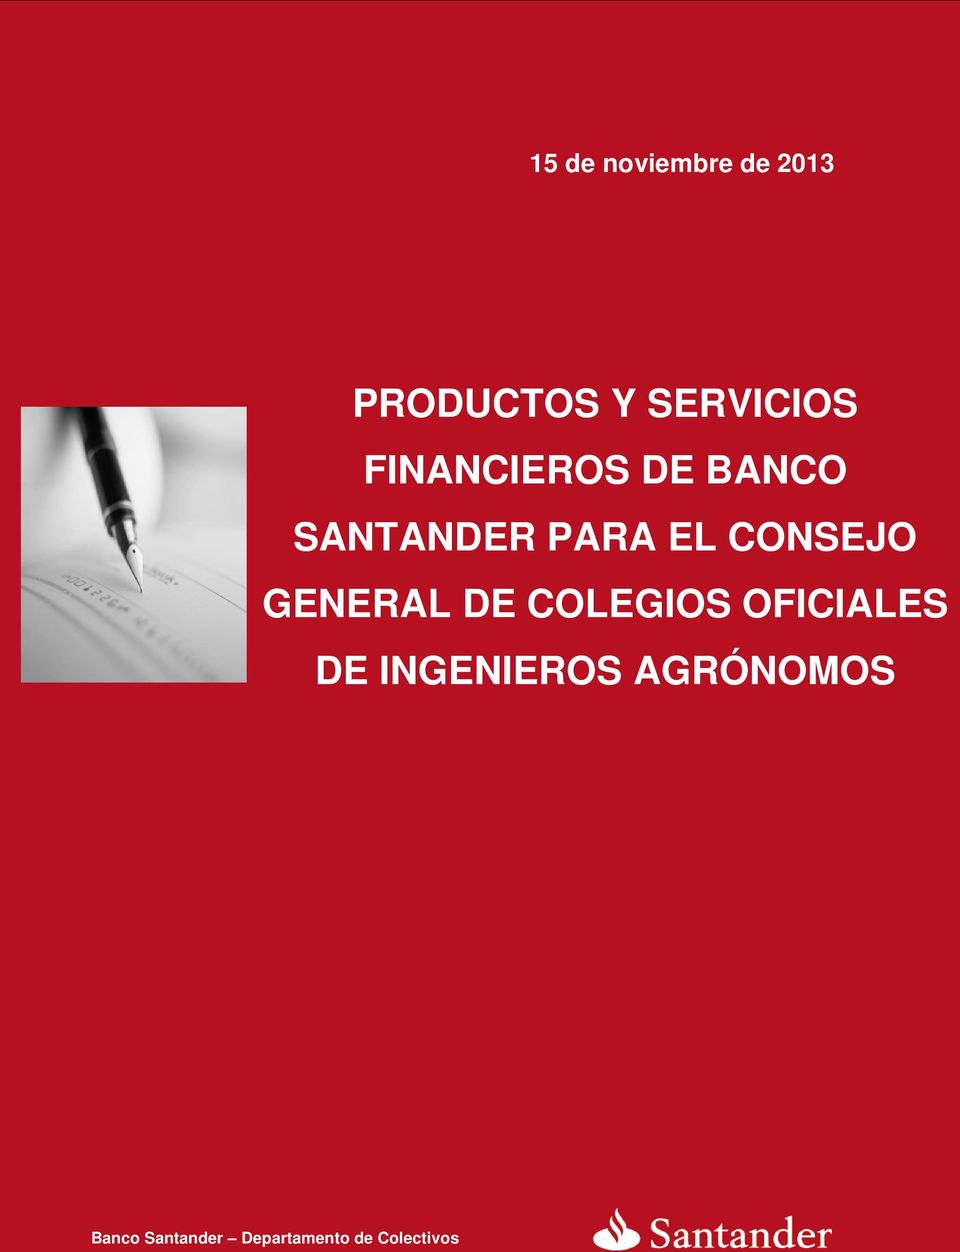 COLEGIOS OFICIALES Banco Santander Departamento de